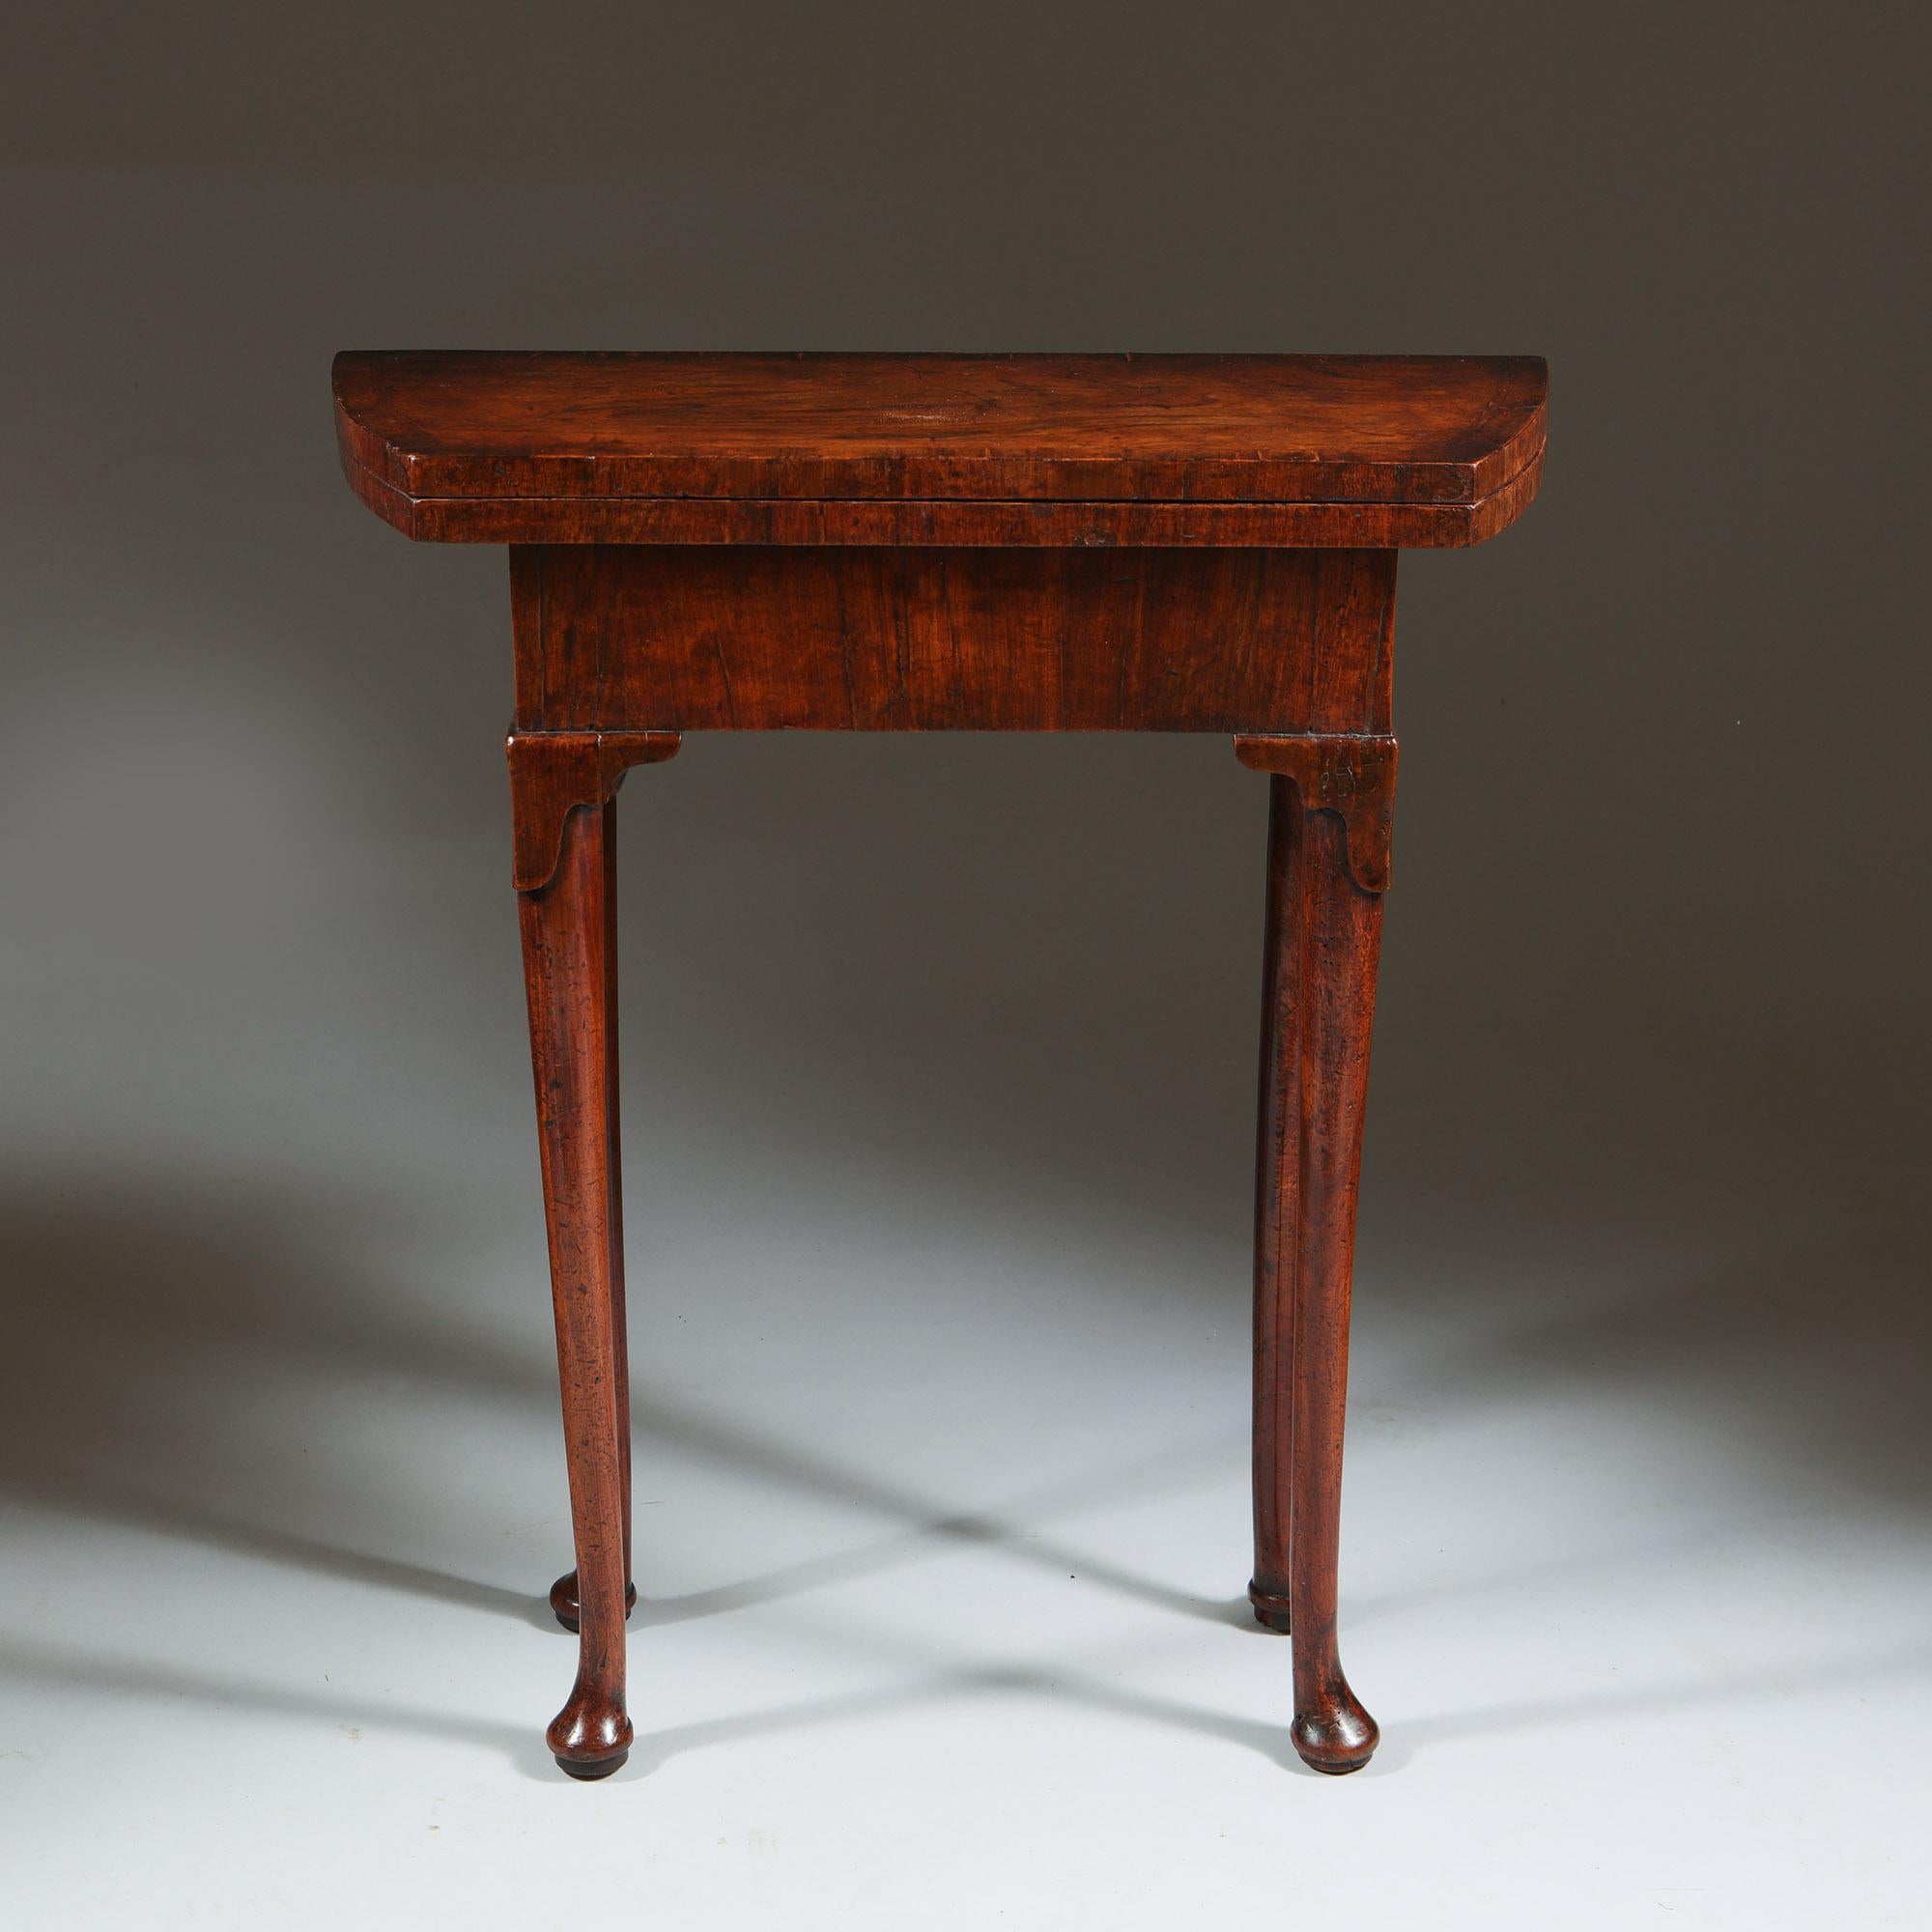 Table de célibataire en noyer sculpté unique du début du XVIIIe siècle, datant de 1720-1730.

La table est d'une taille réduite très rare. Elle repose sur des pieds droits élancés, avec des genoux sculptés en forme de lappet, et se termine par des